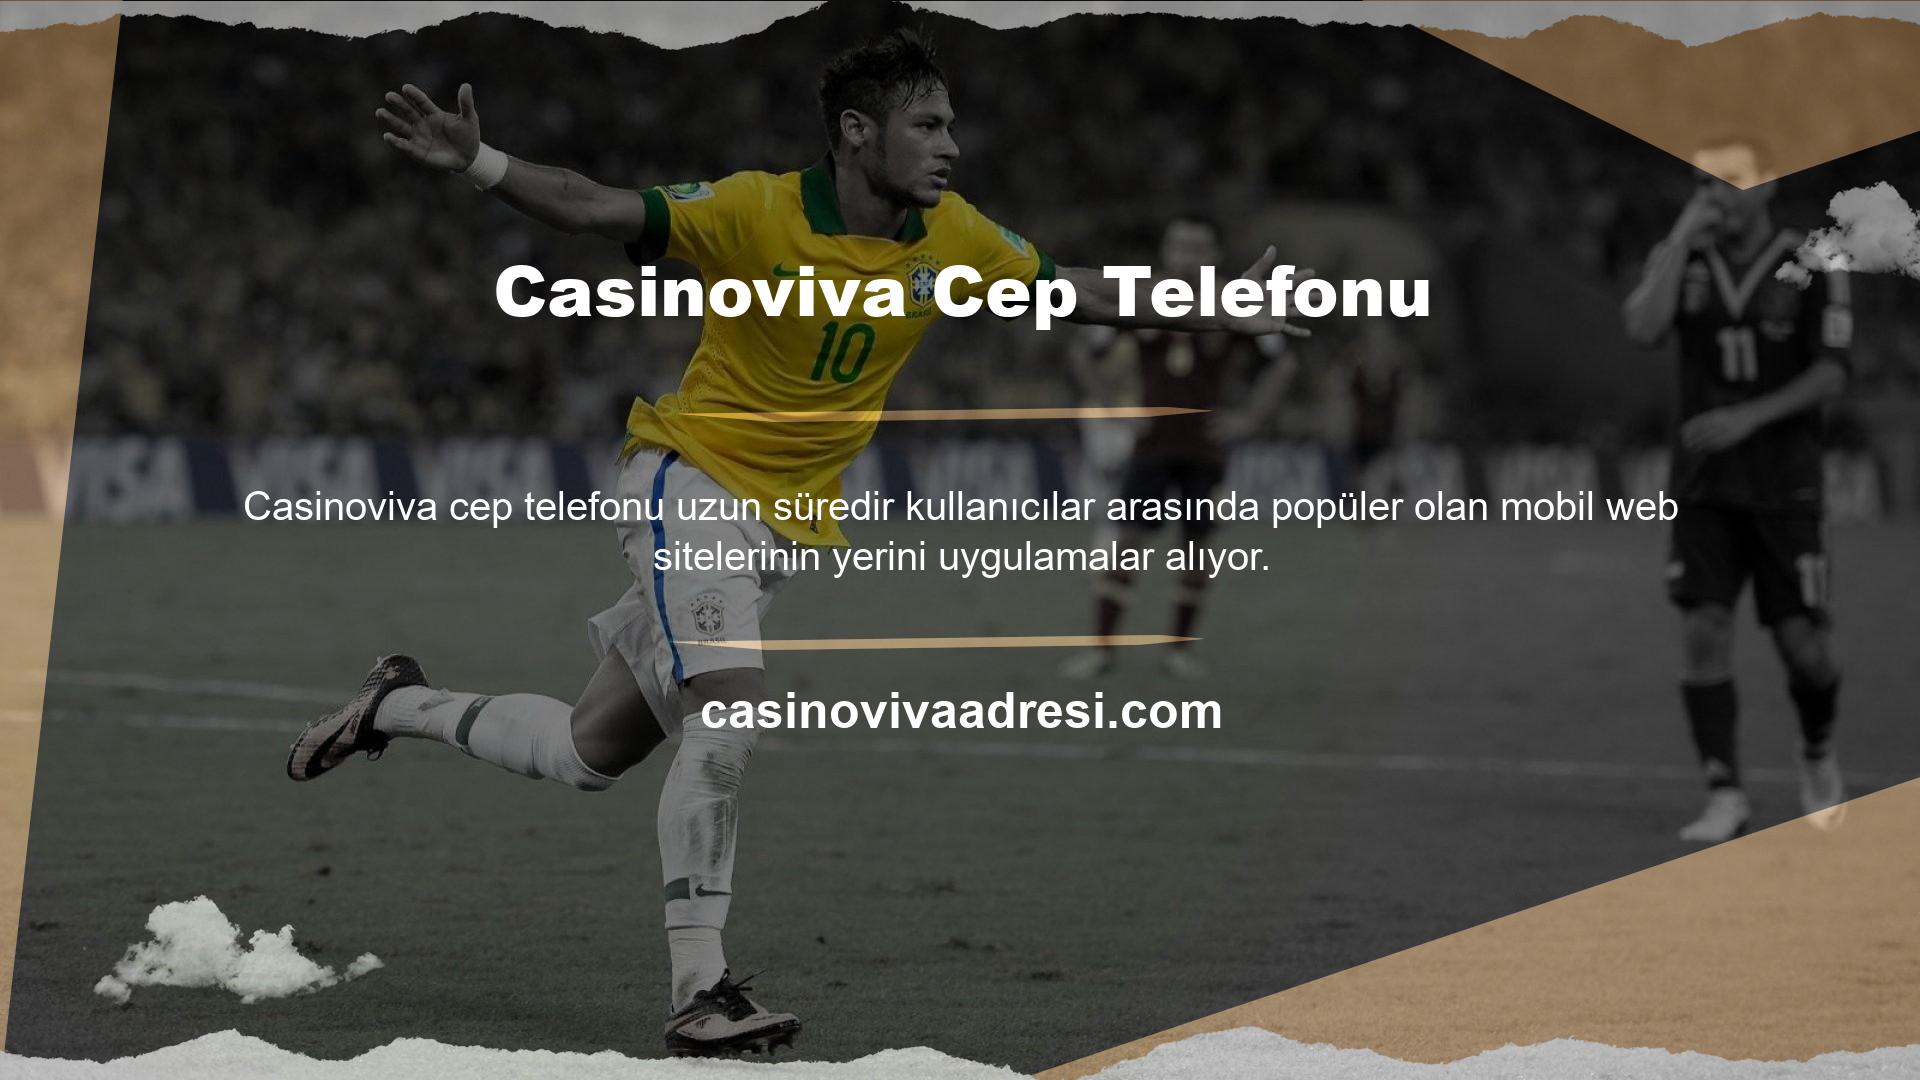 Casinoviva, iyi hazırlanmış mobil sayfalara sahip bahis sitelerinden biridir